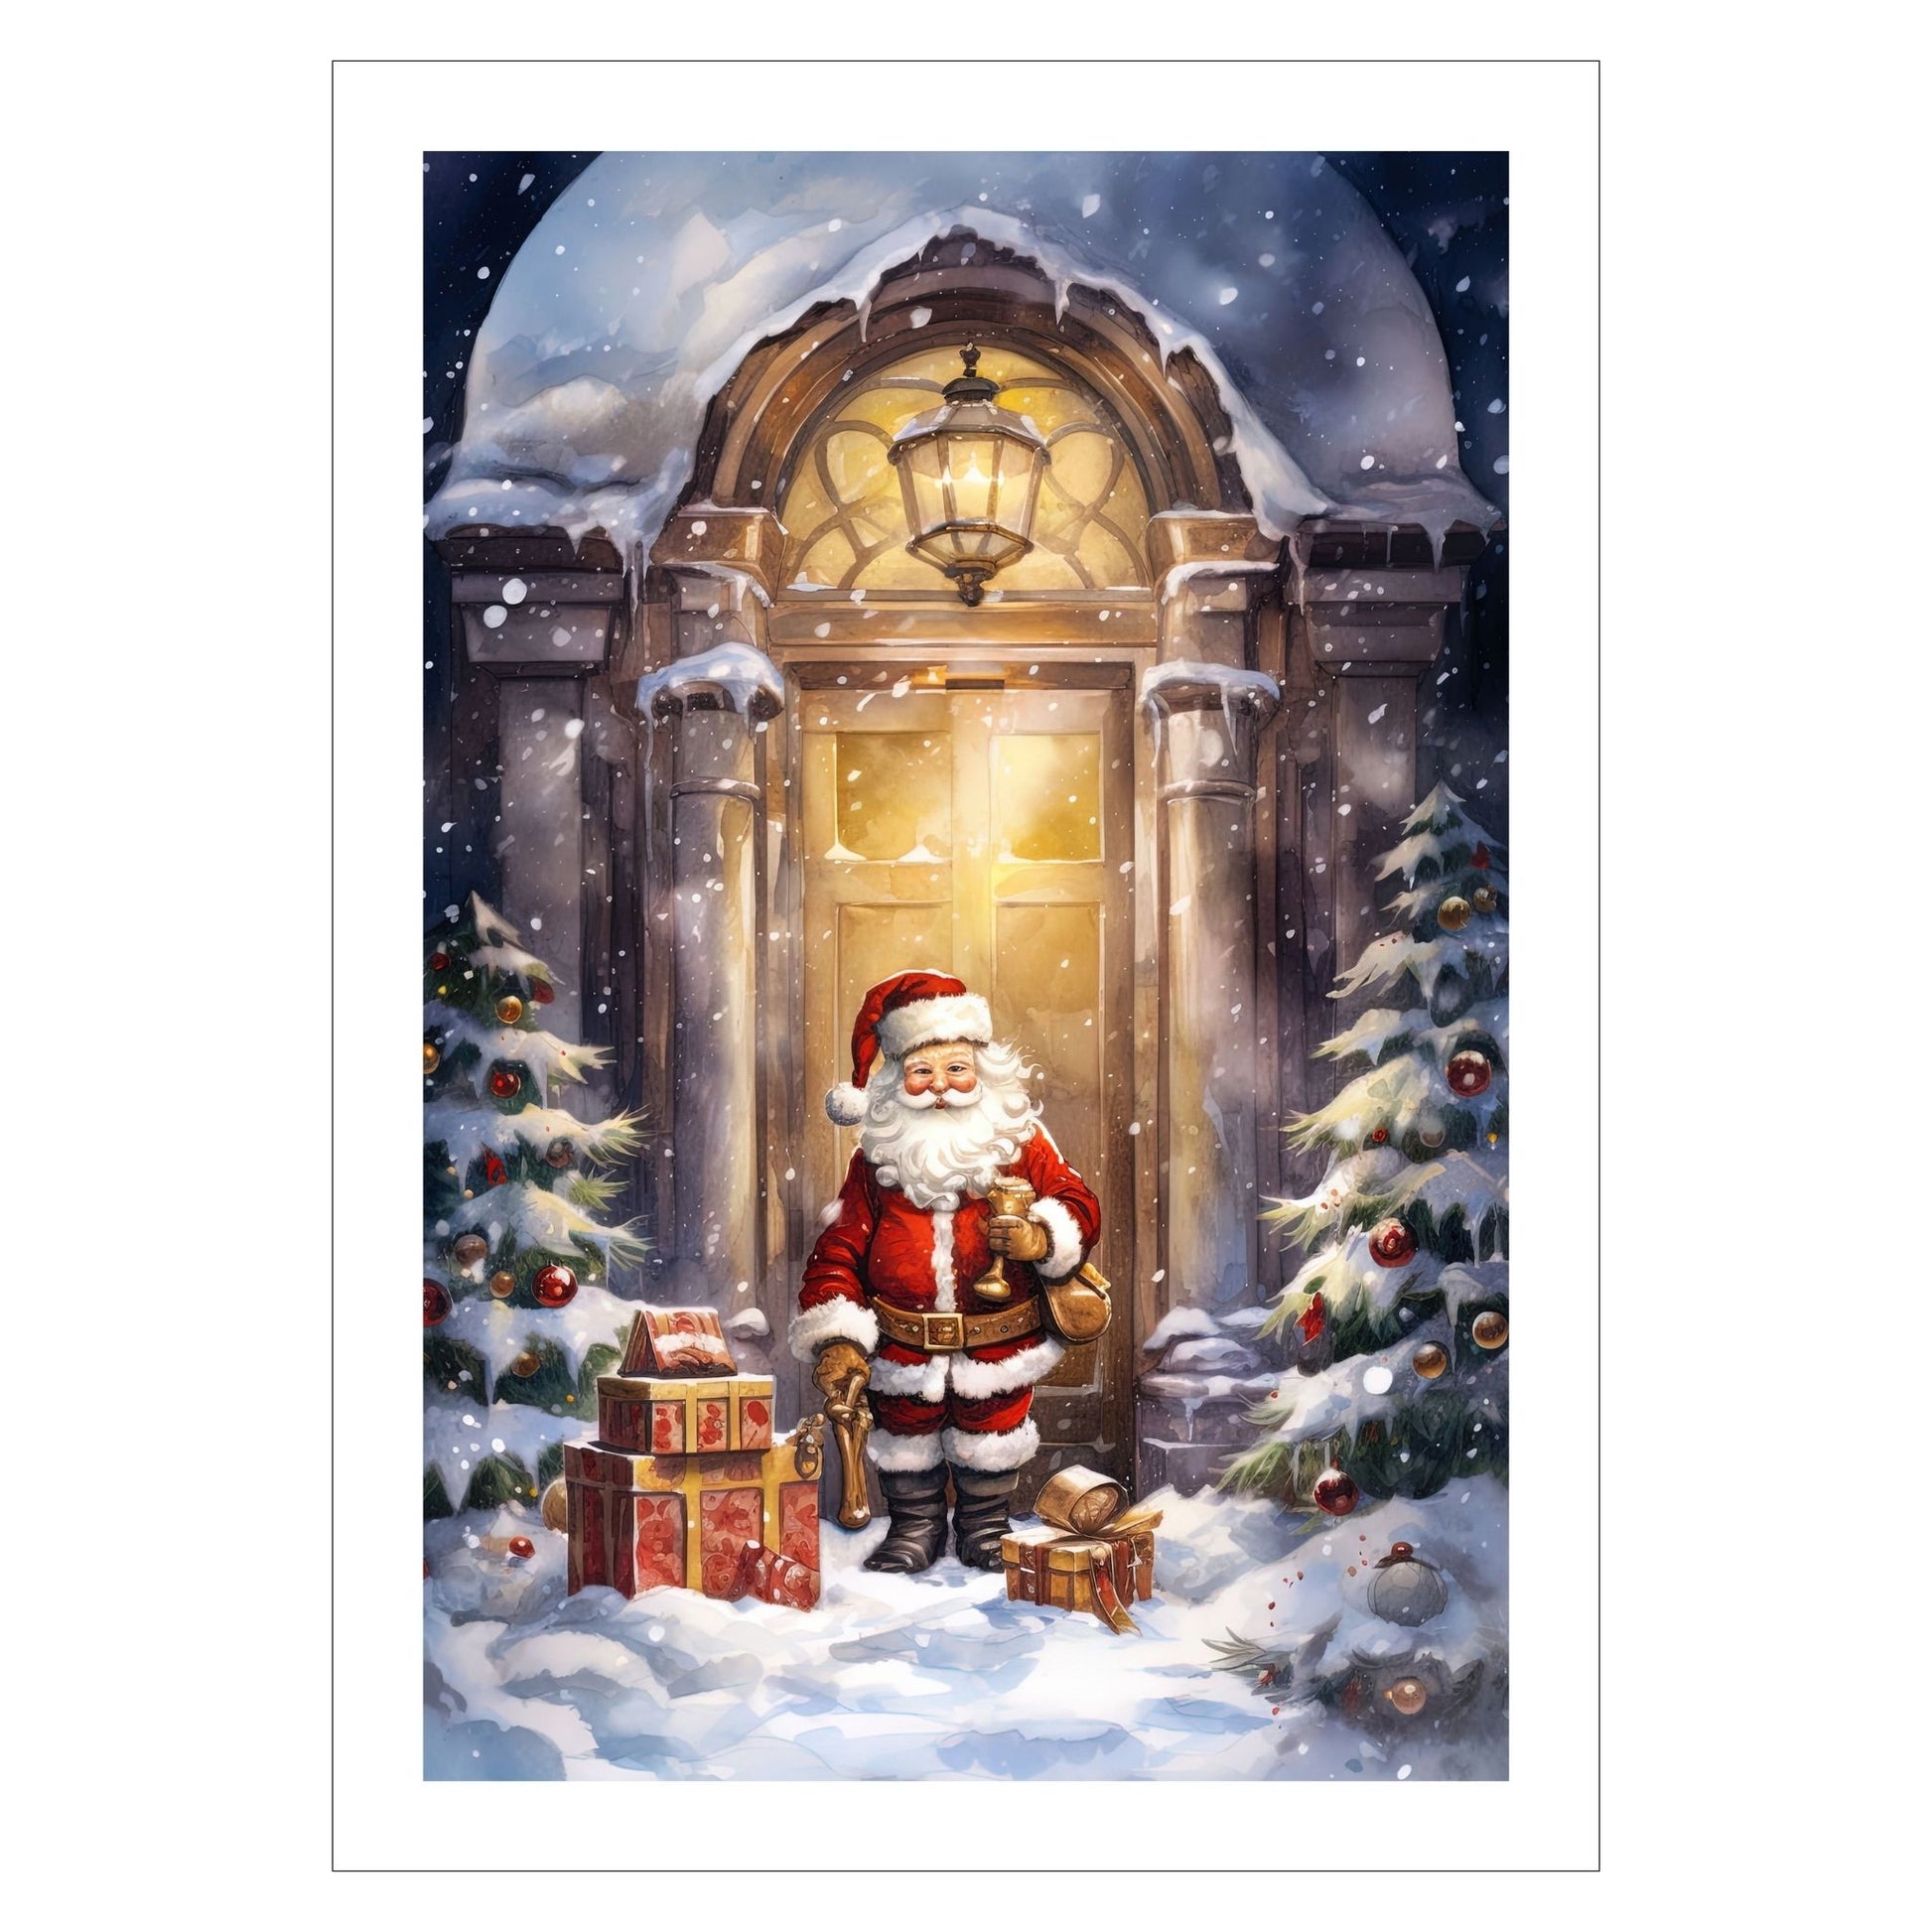 Grafisk motiv av julenisse som kommer med julepakker. Han står utenfor en dør, og ute er det snø og pyntede juletrær. Han er kledd i rød nissedrakt, har langt, hvitt skjegg, og på hodet har han en rød nisselue med hvit pelskant. Motivet fås som plakat og på lerret.